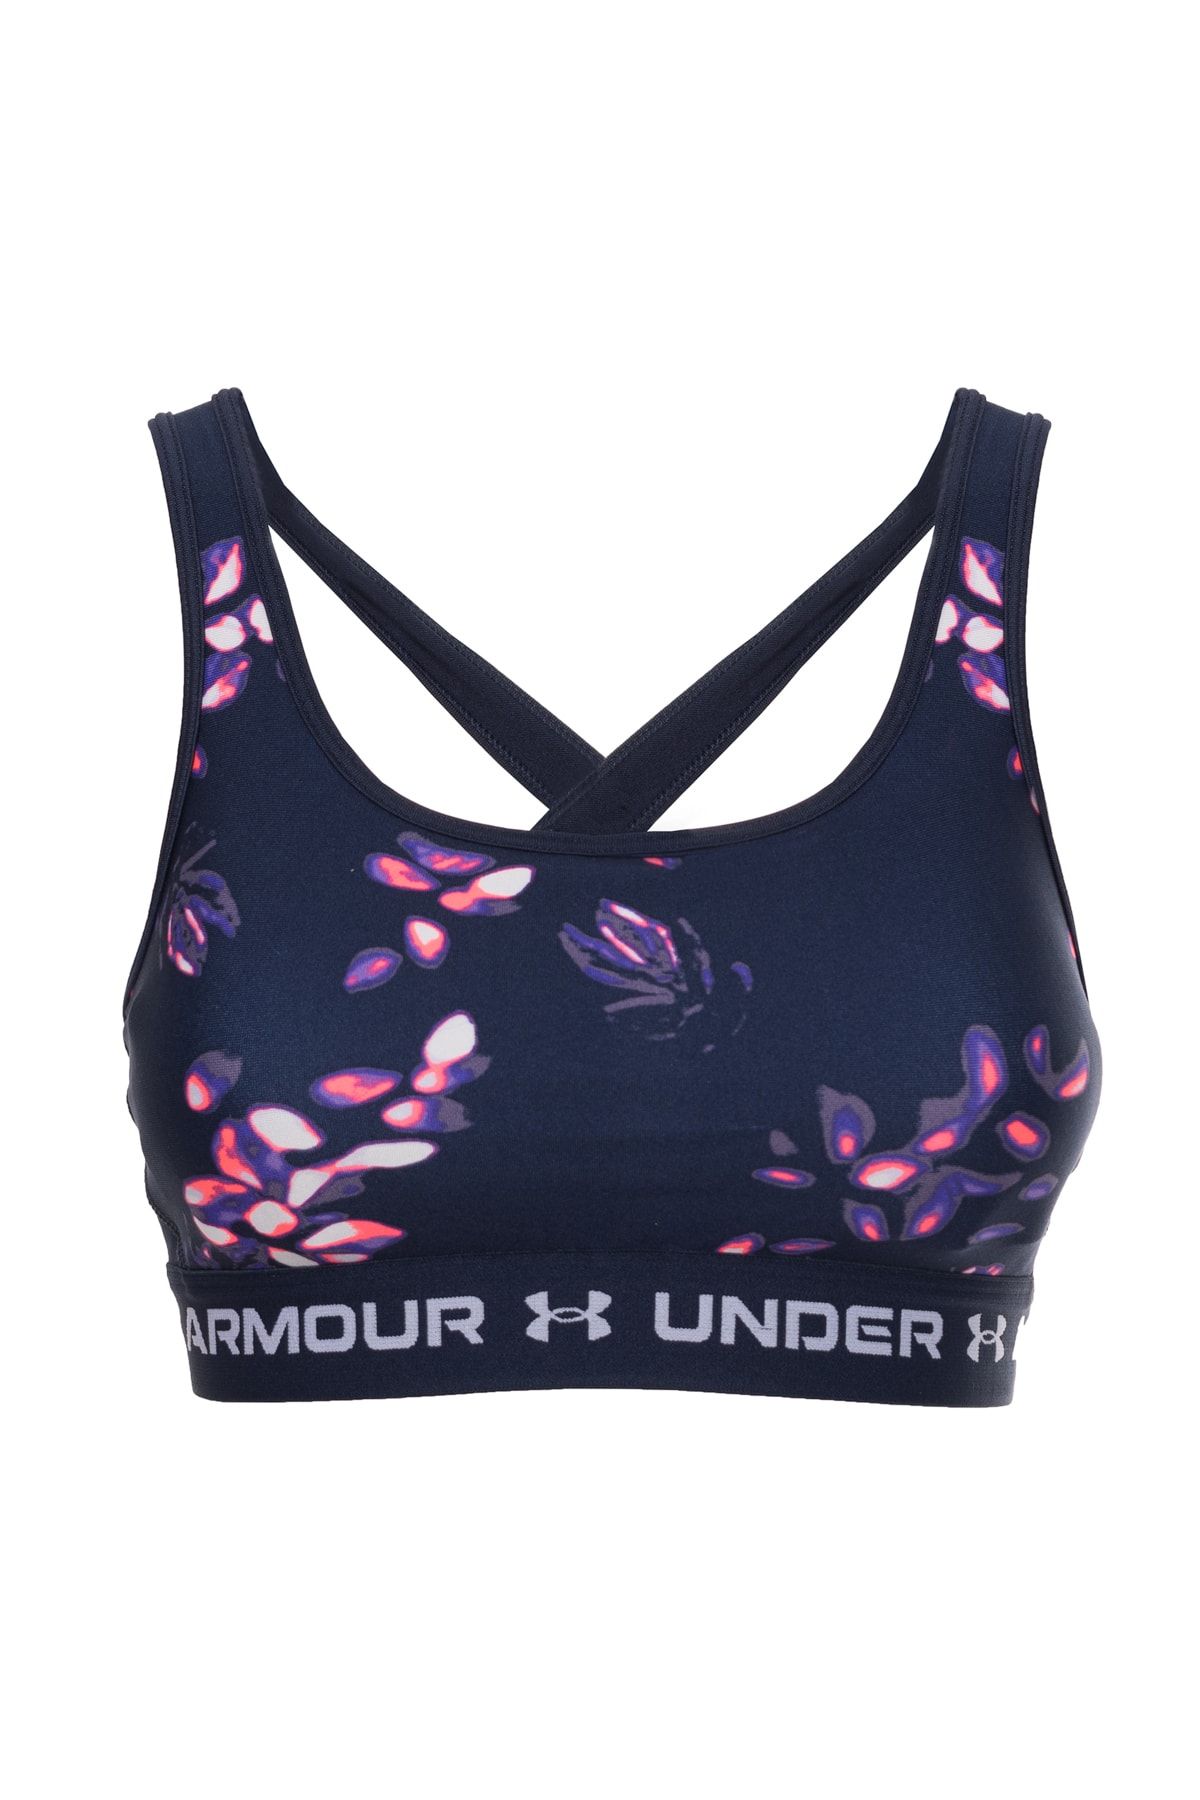 Under Armour Blue Women Sports Bras Styles, Prices - Trendyol